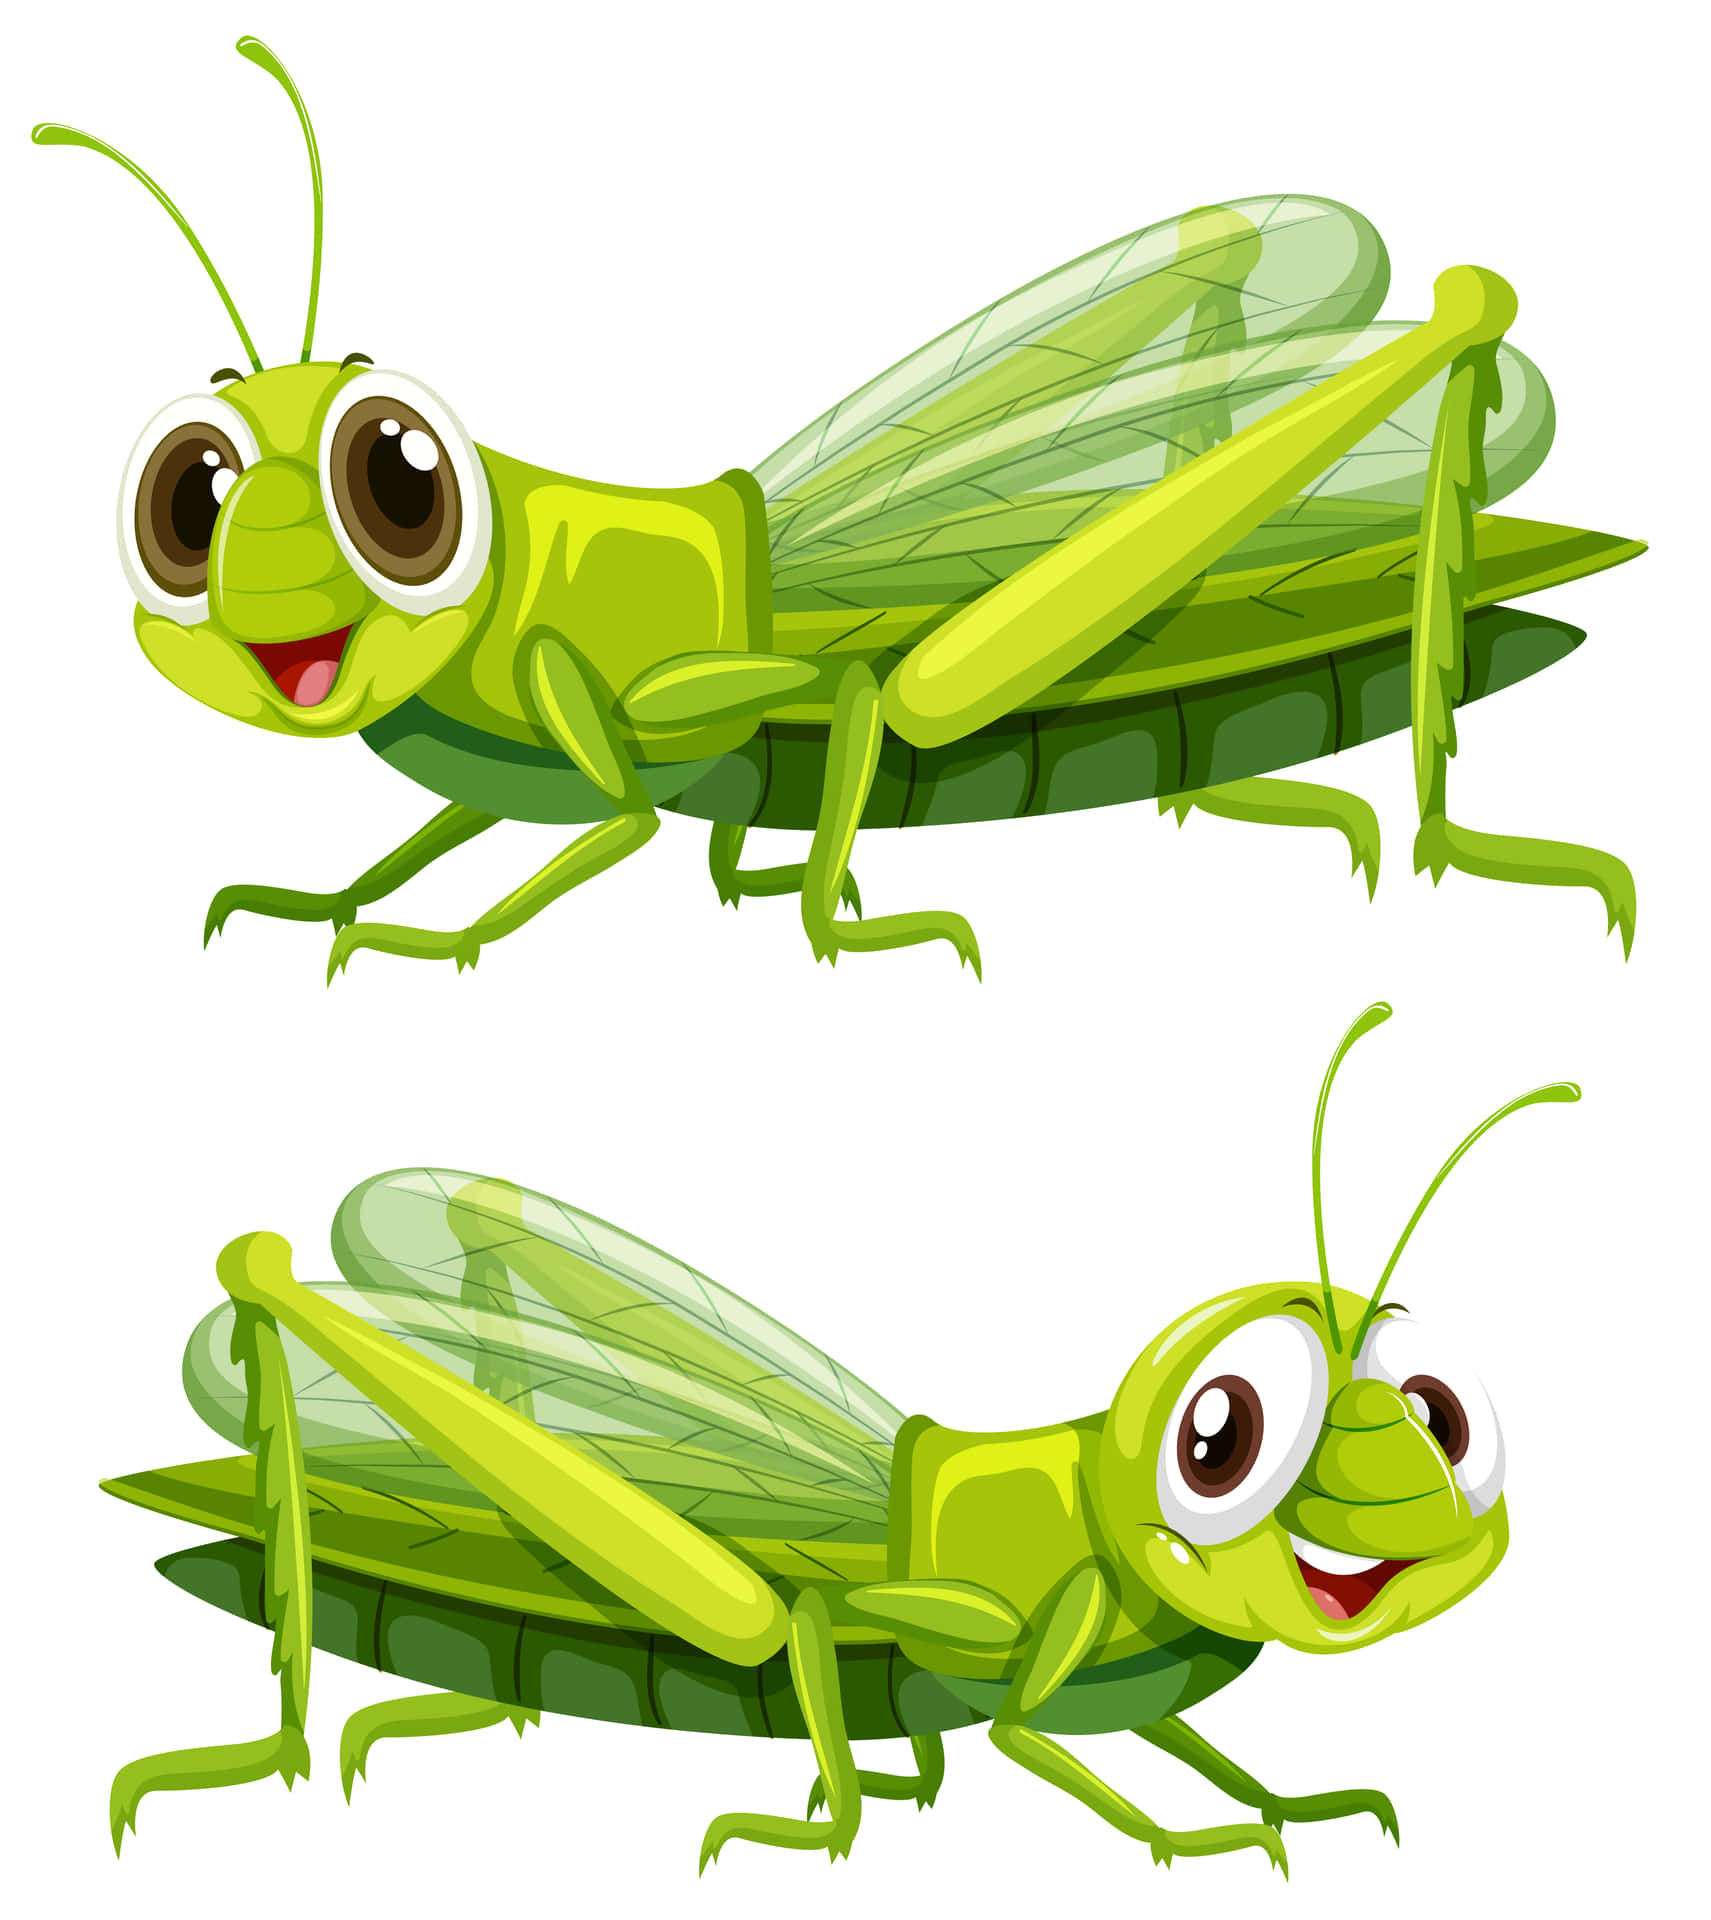 Captivating Close-Up of a Vibrant Green Grasshopper